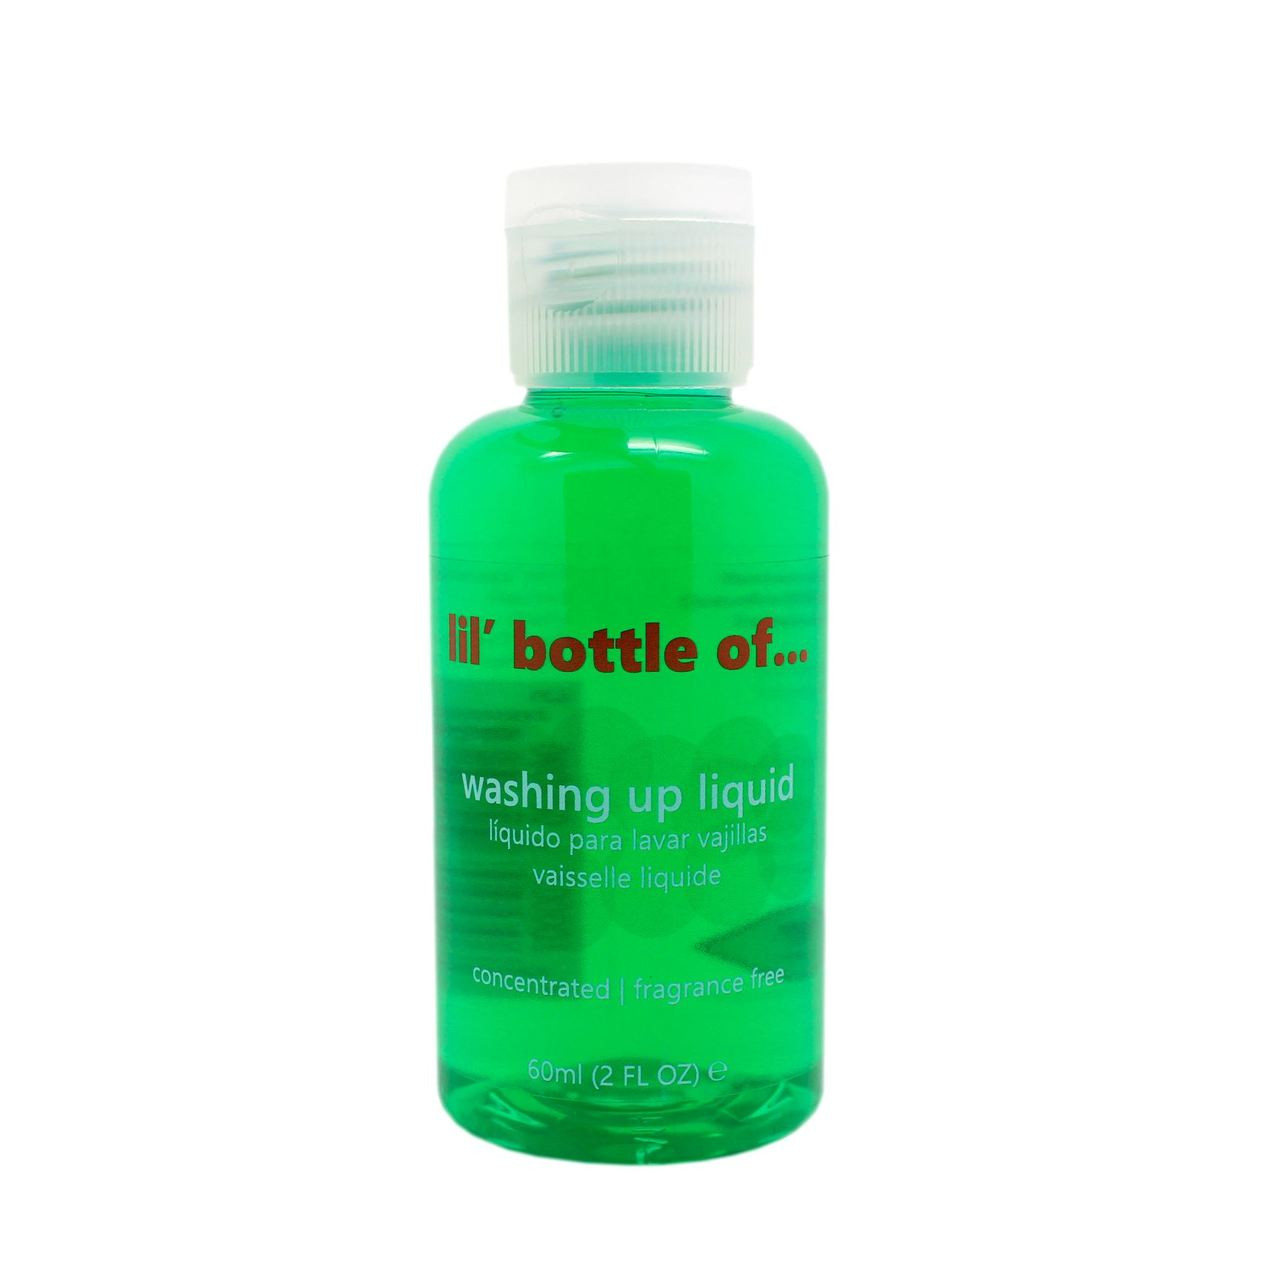 lil' bottle of... washing up liquid 60ml | mini travel size - Go Tiny